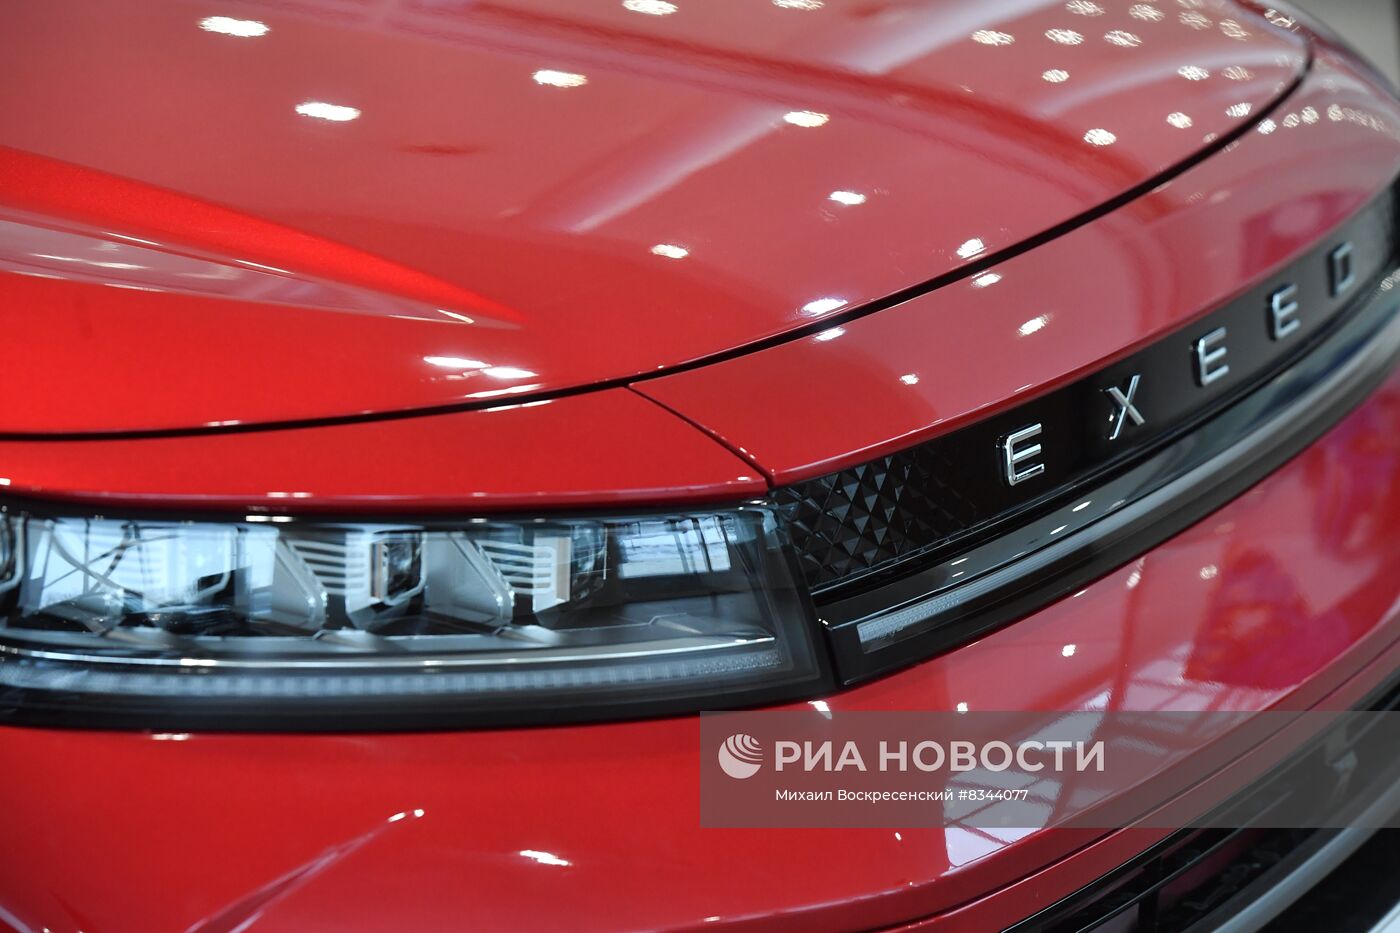 Продажа китайских автомобилей в России